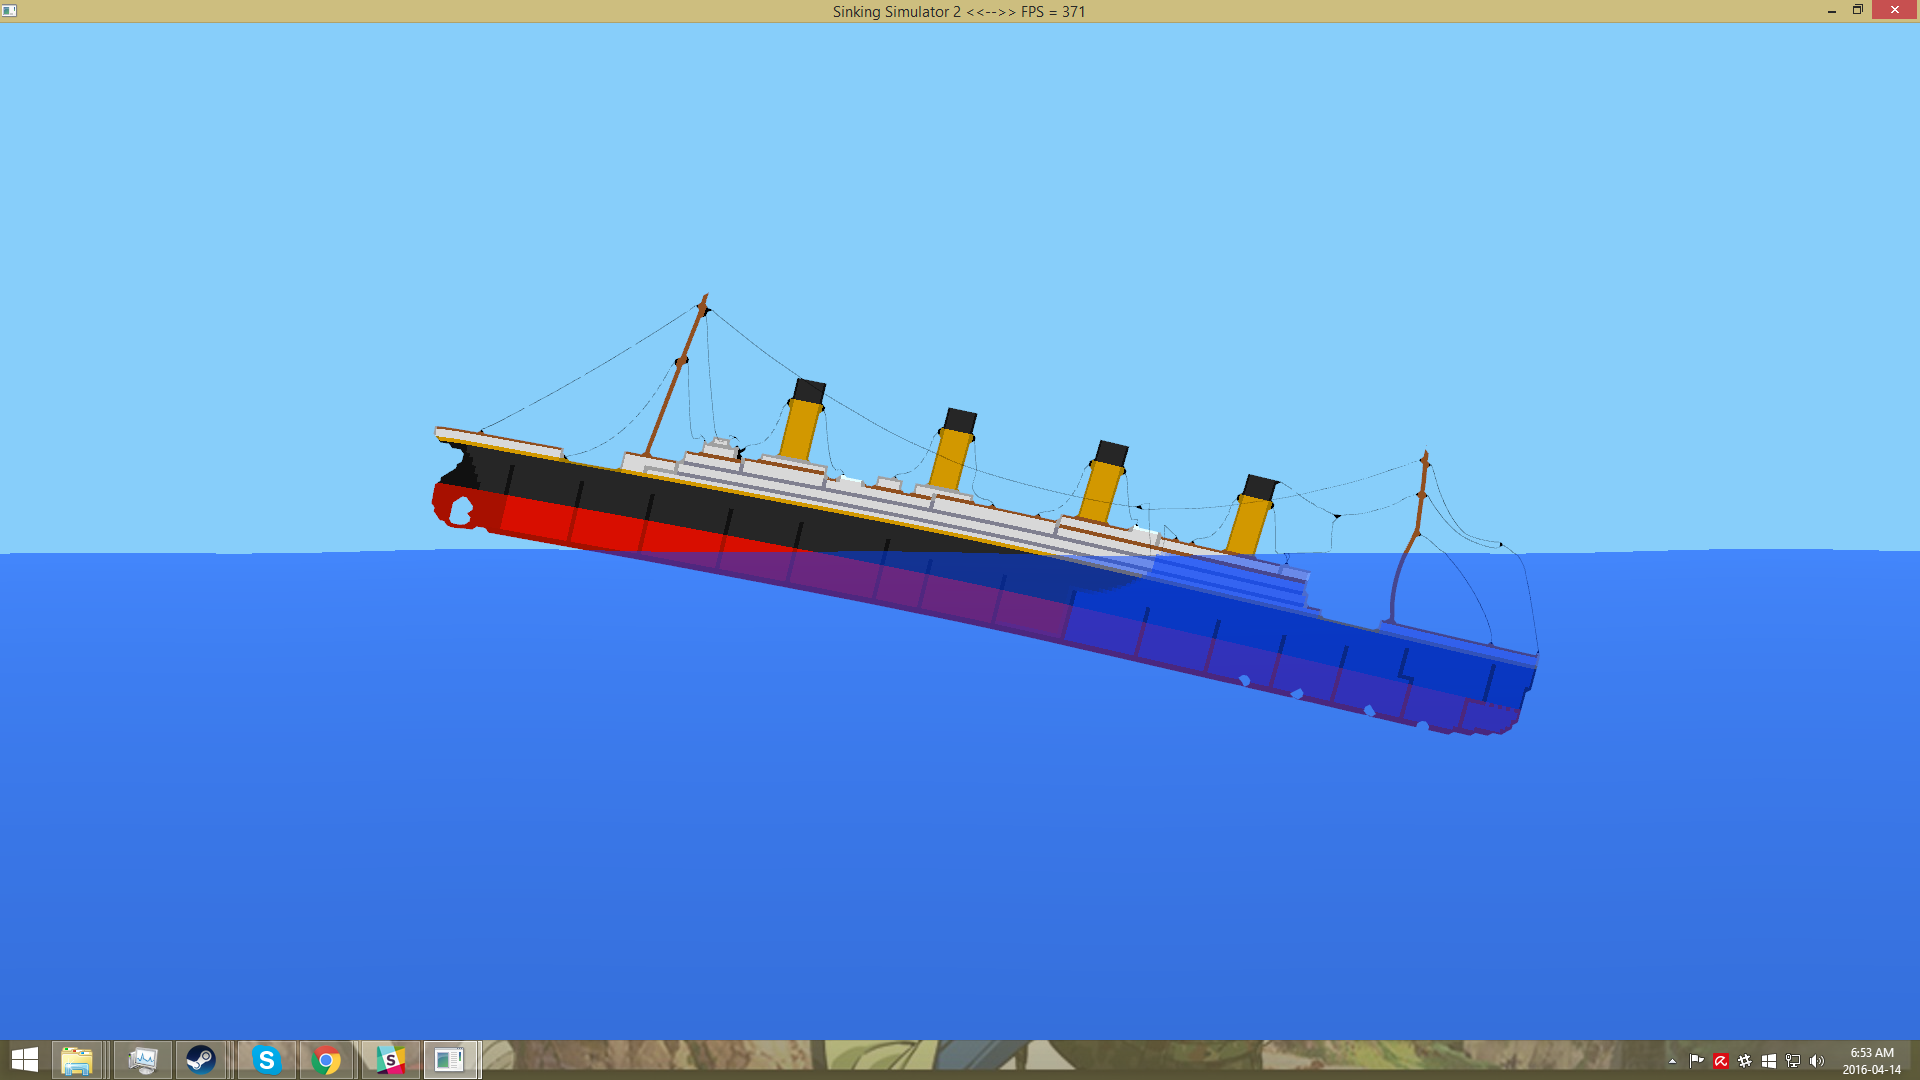 sinking ship simulator game